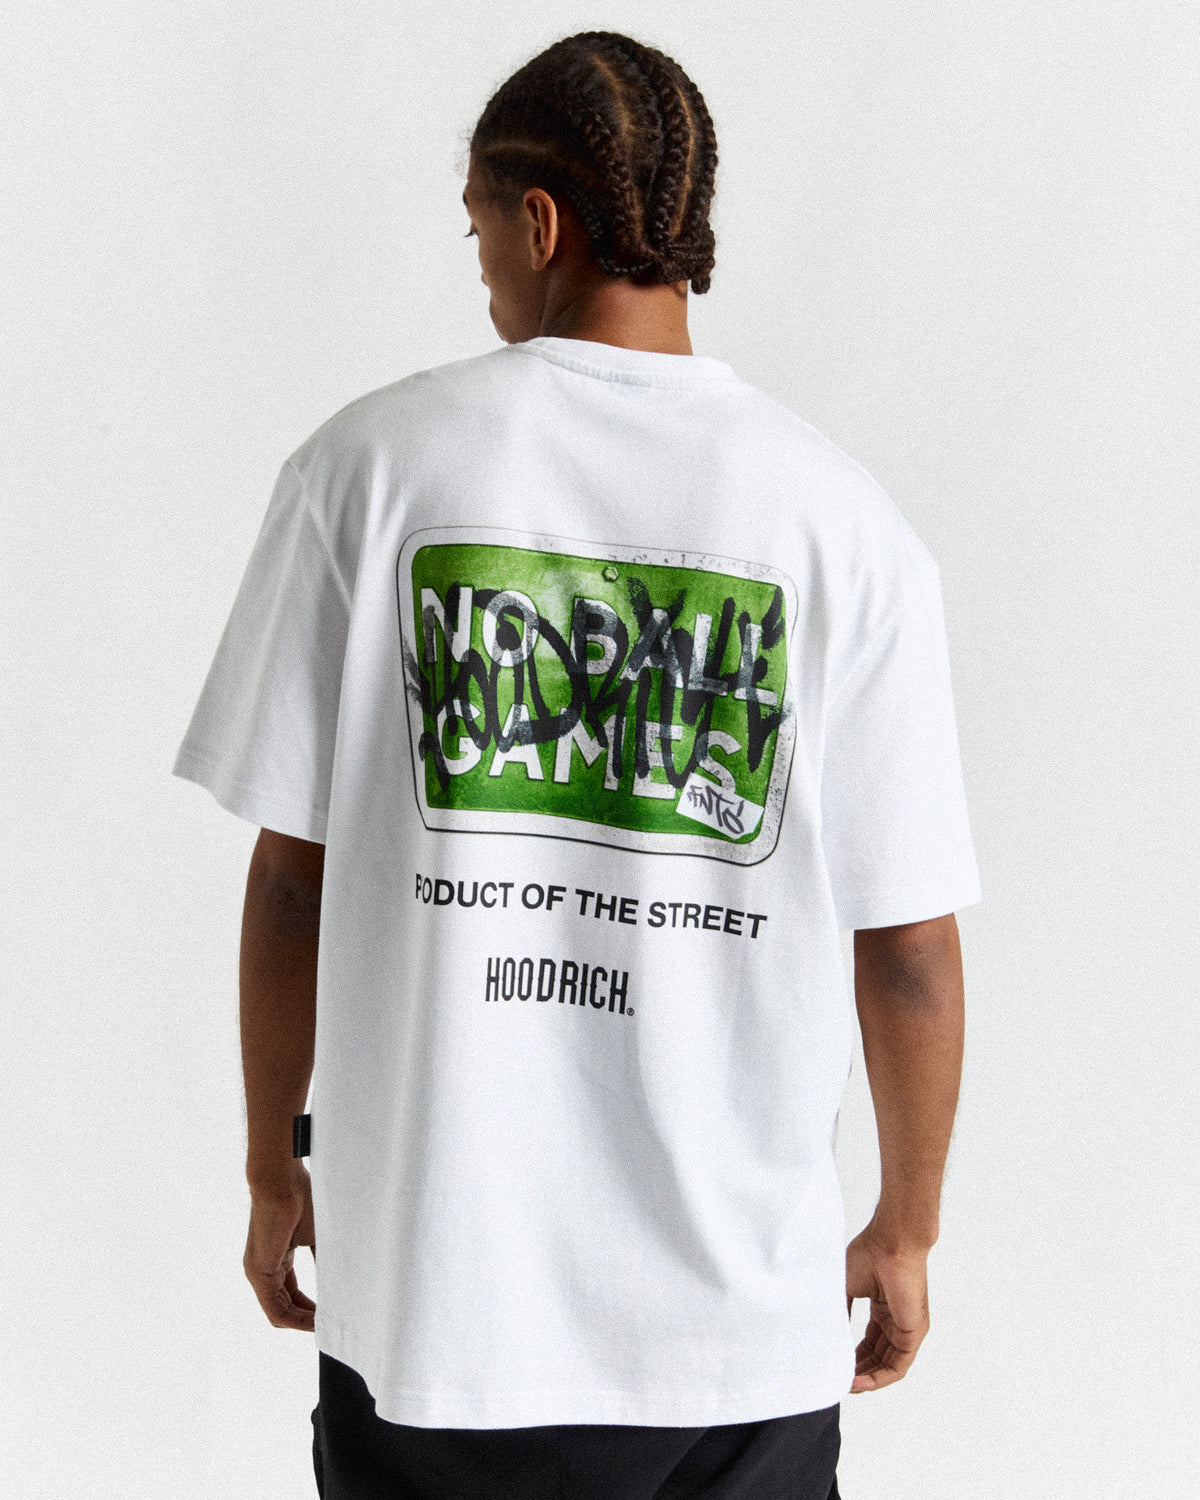 Graffiti No Ball Games T-Shirt - White/Black/Green